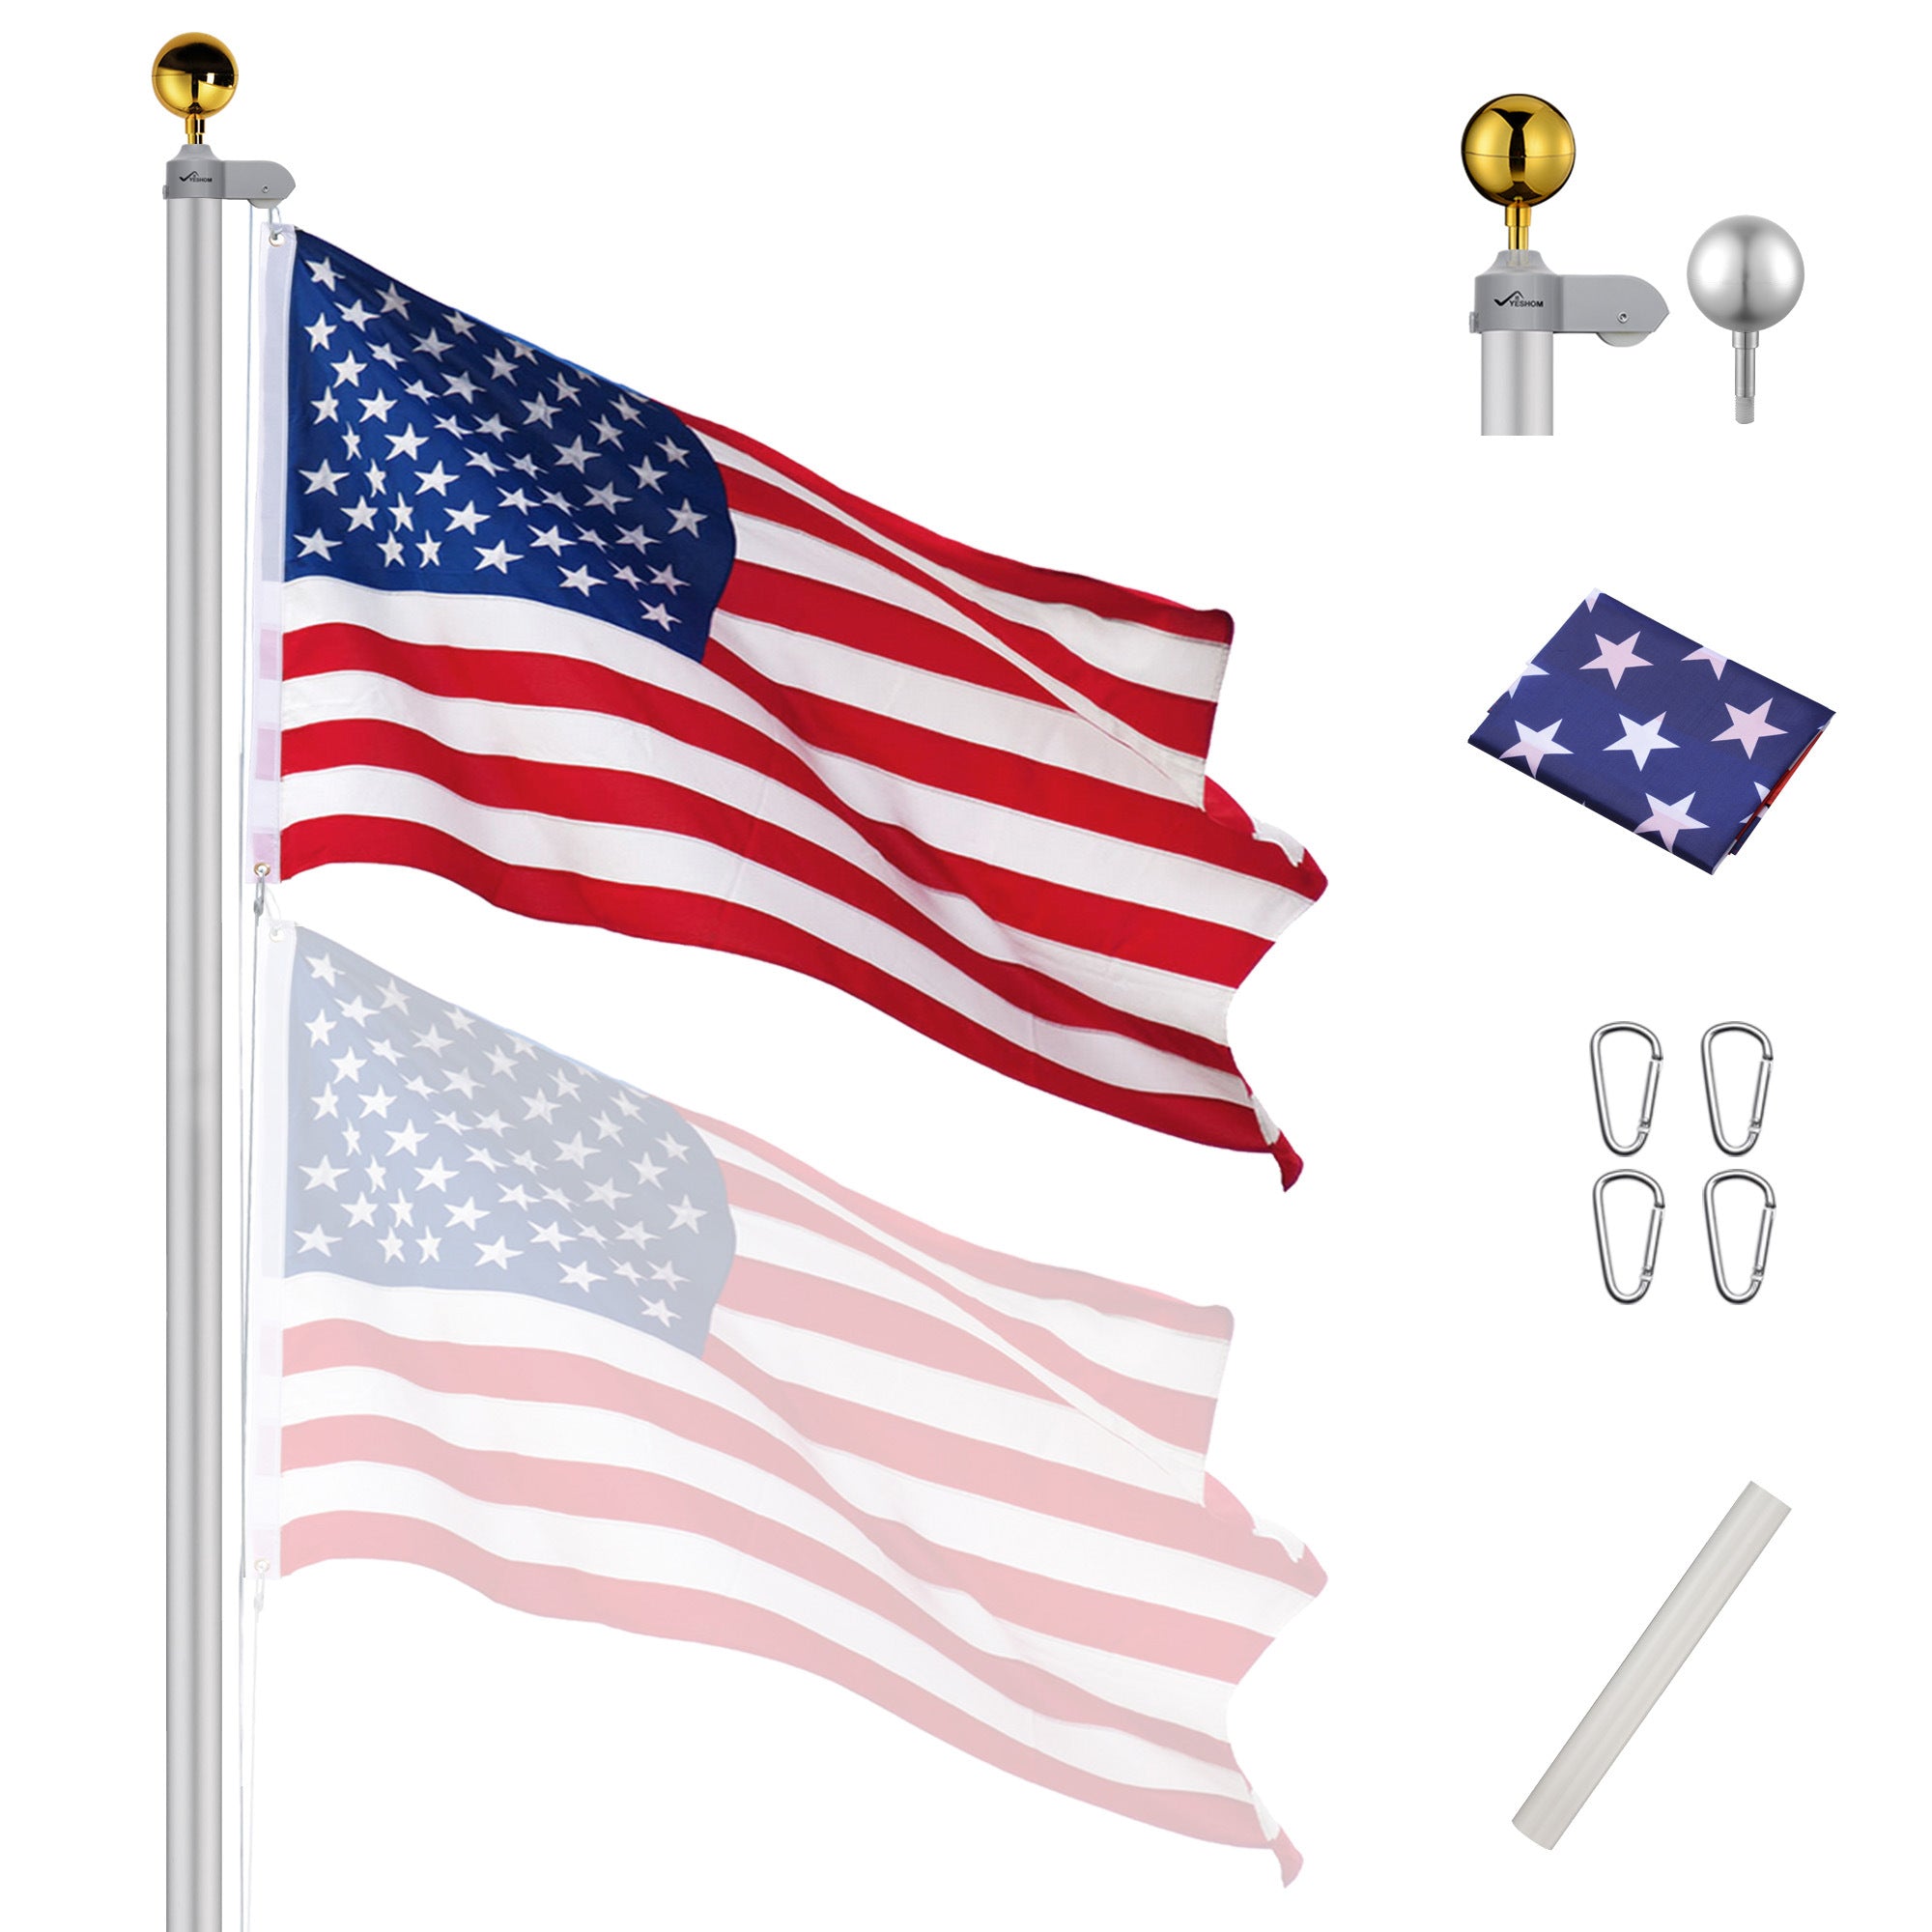 25ft Sectional Flag Pole w/ U.S. Flag & Ball